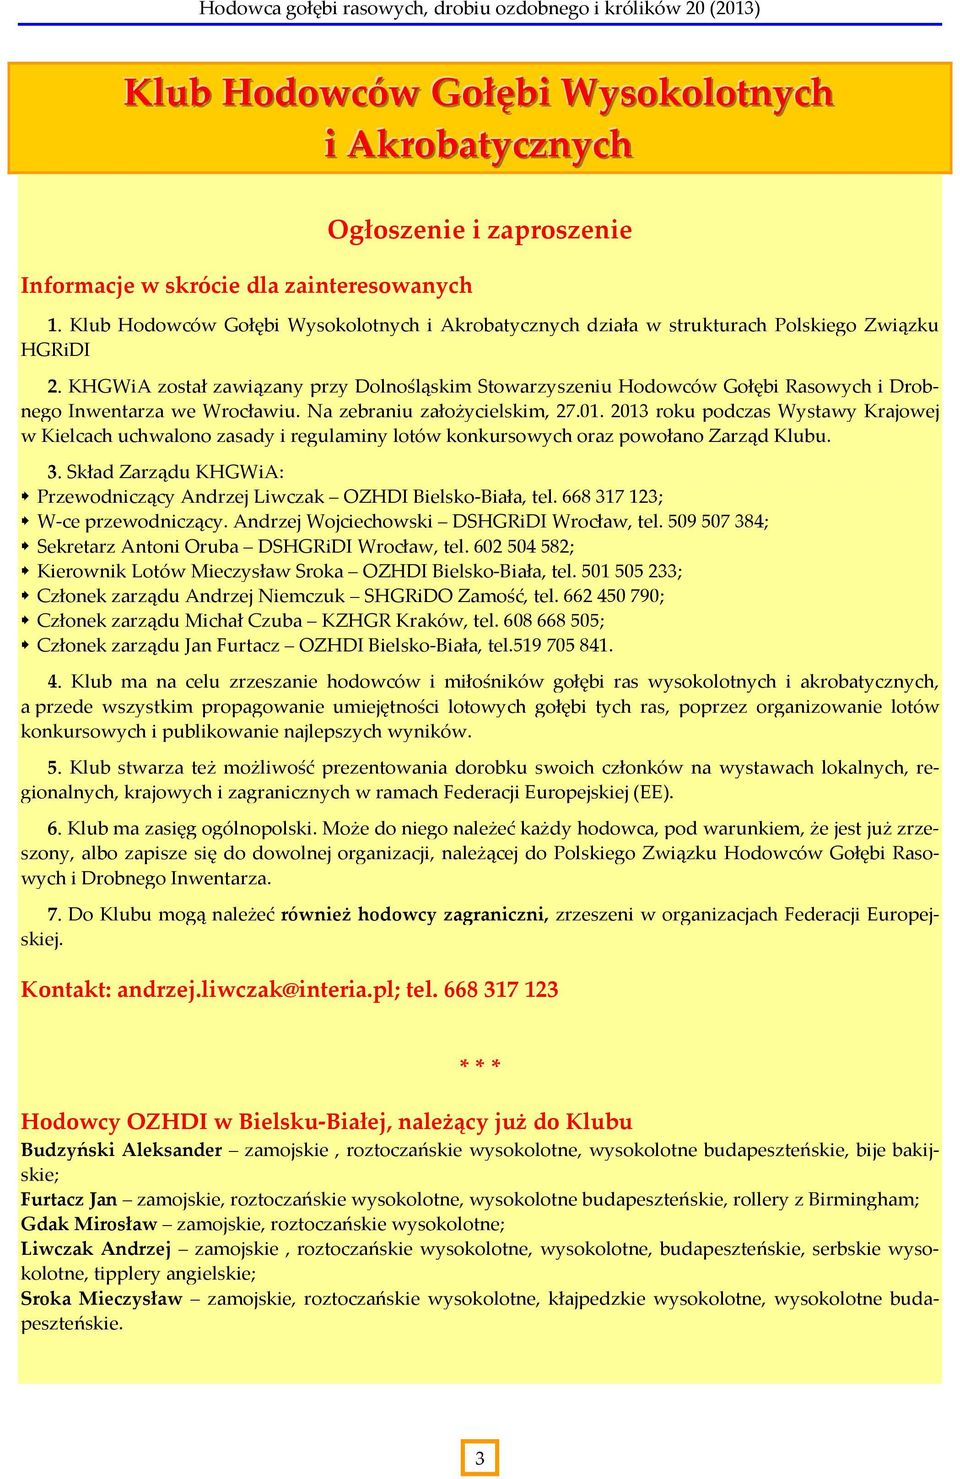 KHGWiA został zawiązany przy Dolnośląskim Stowarzyszeniu Hodowców Gołębi Rasowych i Drobnego Inwentarza we Wrocławiu. Na zebraniu założycielskim, 27.01.